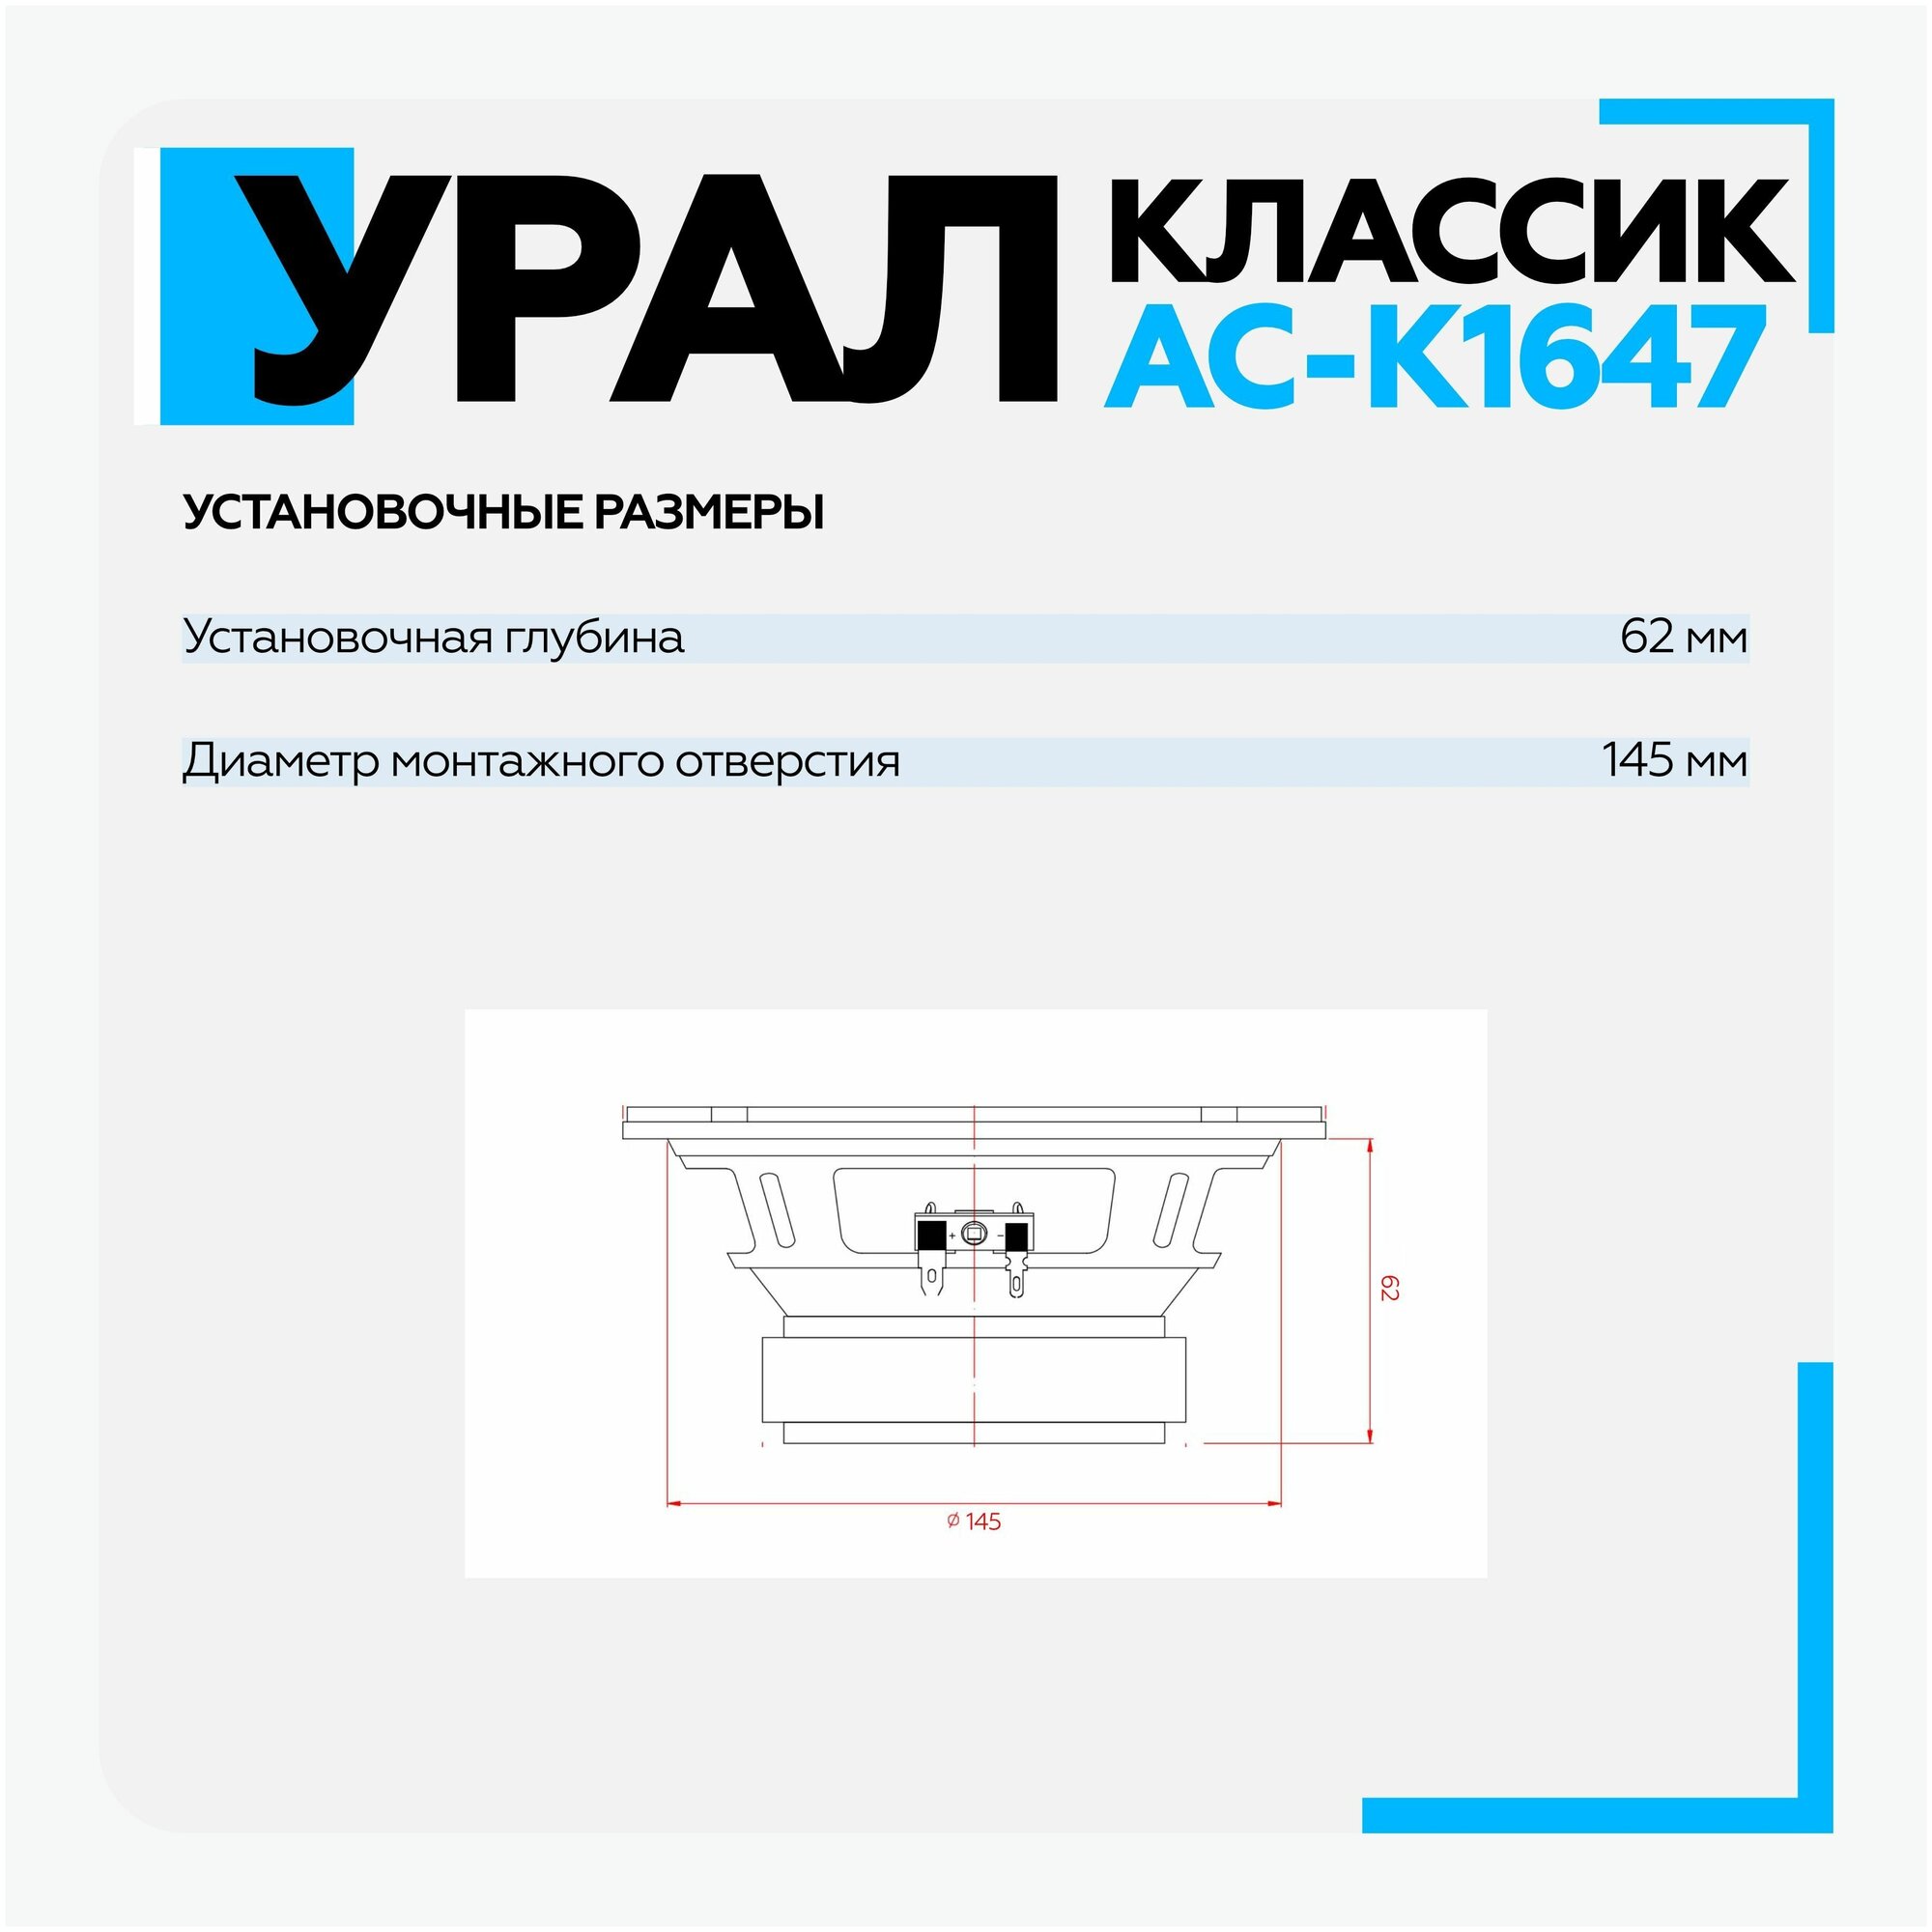 Автомобильные колонки Ural Классик АС-К1647 (урал классик ас-к1647) - фото №10